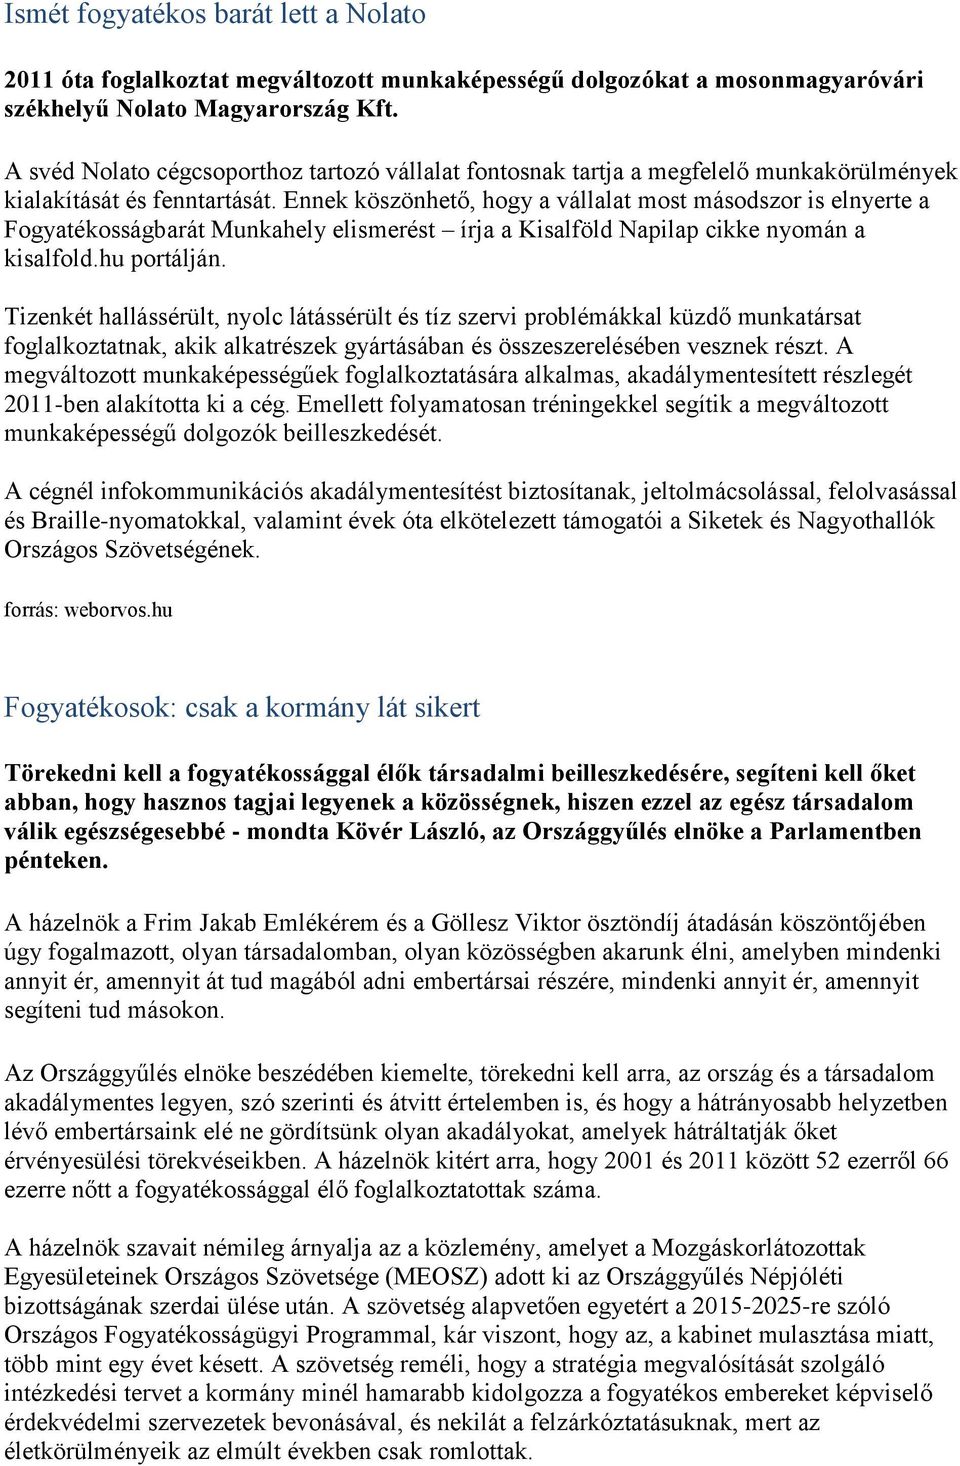 Ennek köszönhető, hogy a vállalat most másodszor is elnyerte a Fogyatékosságbarát Munkahely elismerést írja a Kisalföld Napilap cikke nyomán a kisalfold.hu portálján.